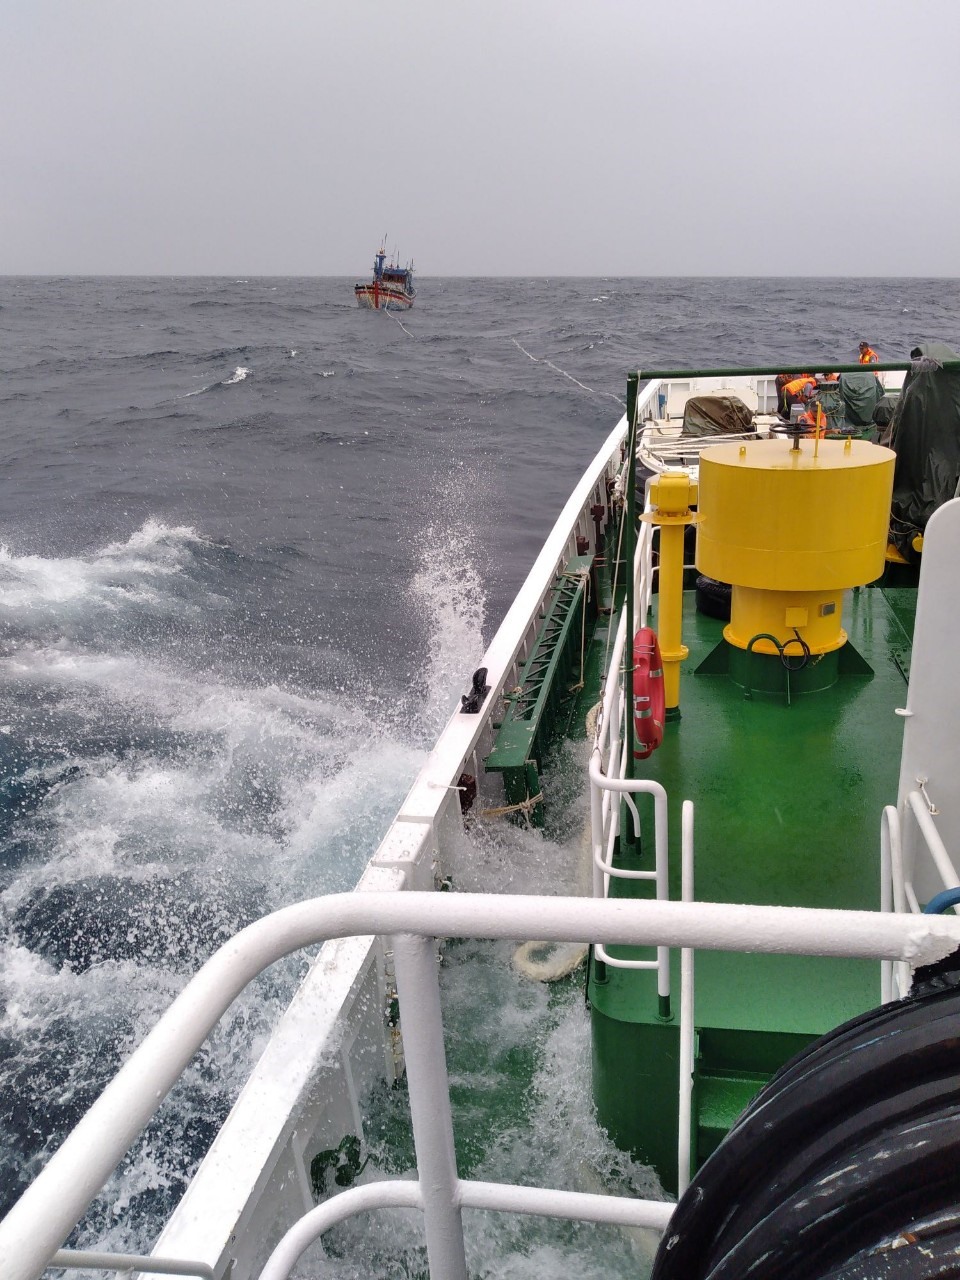 Thời tiết xấu nên việc lai dắt tàu BĐ 98658-TS về bờ rất chậm để đảm bảo an toàn. Ảnh: Vũ Bằng